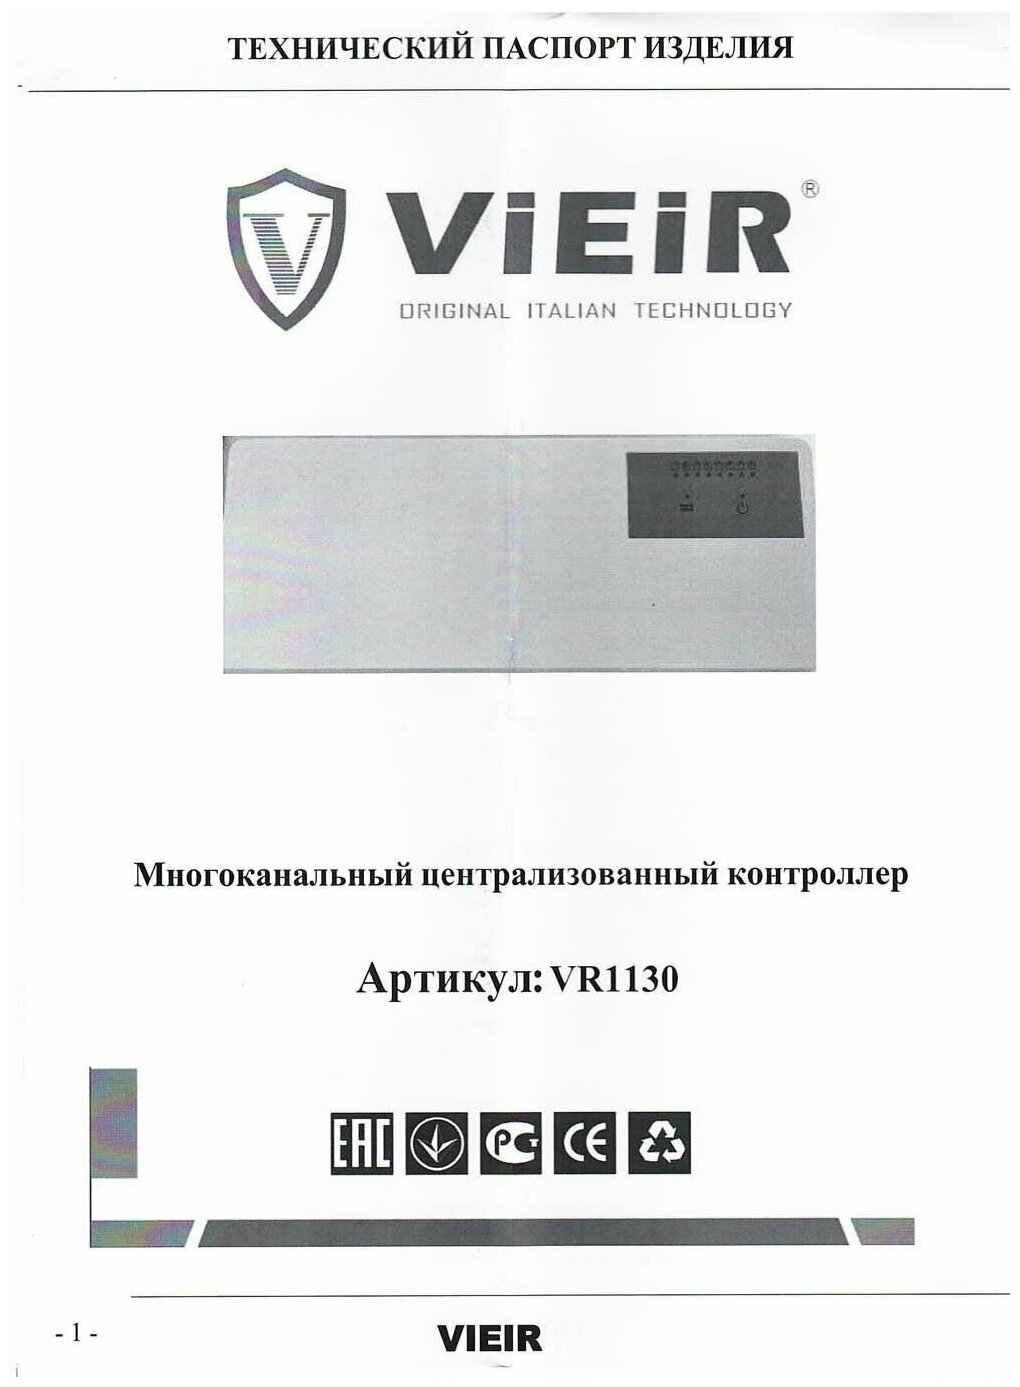 Многоканальный централизованный контроллер систем горячего водоснабжения (ГВС), отопления и теплого пола Vieir / VR1130